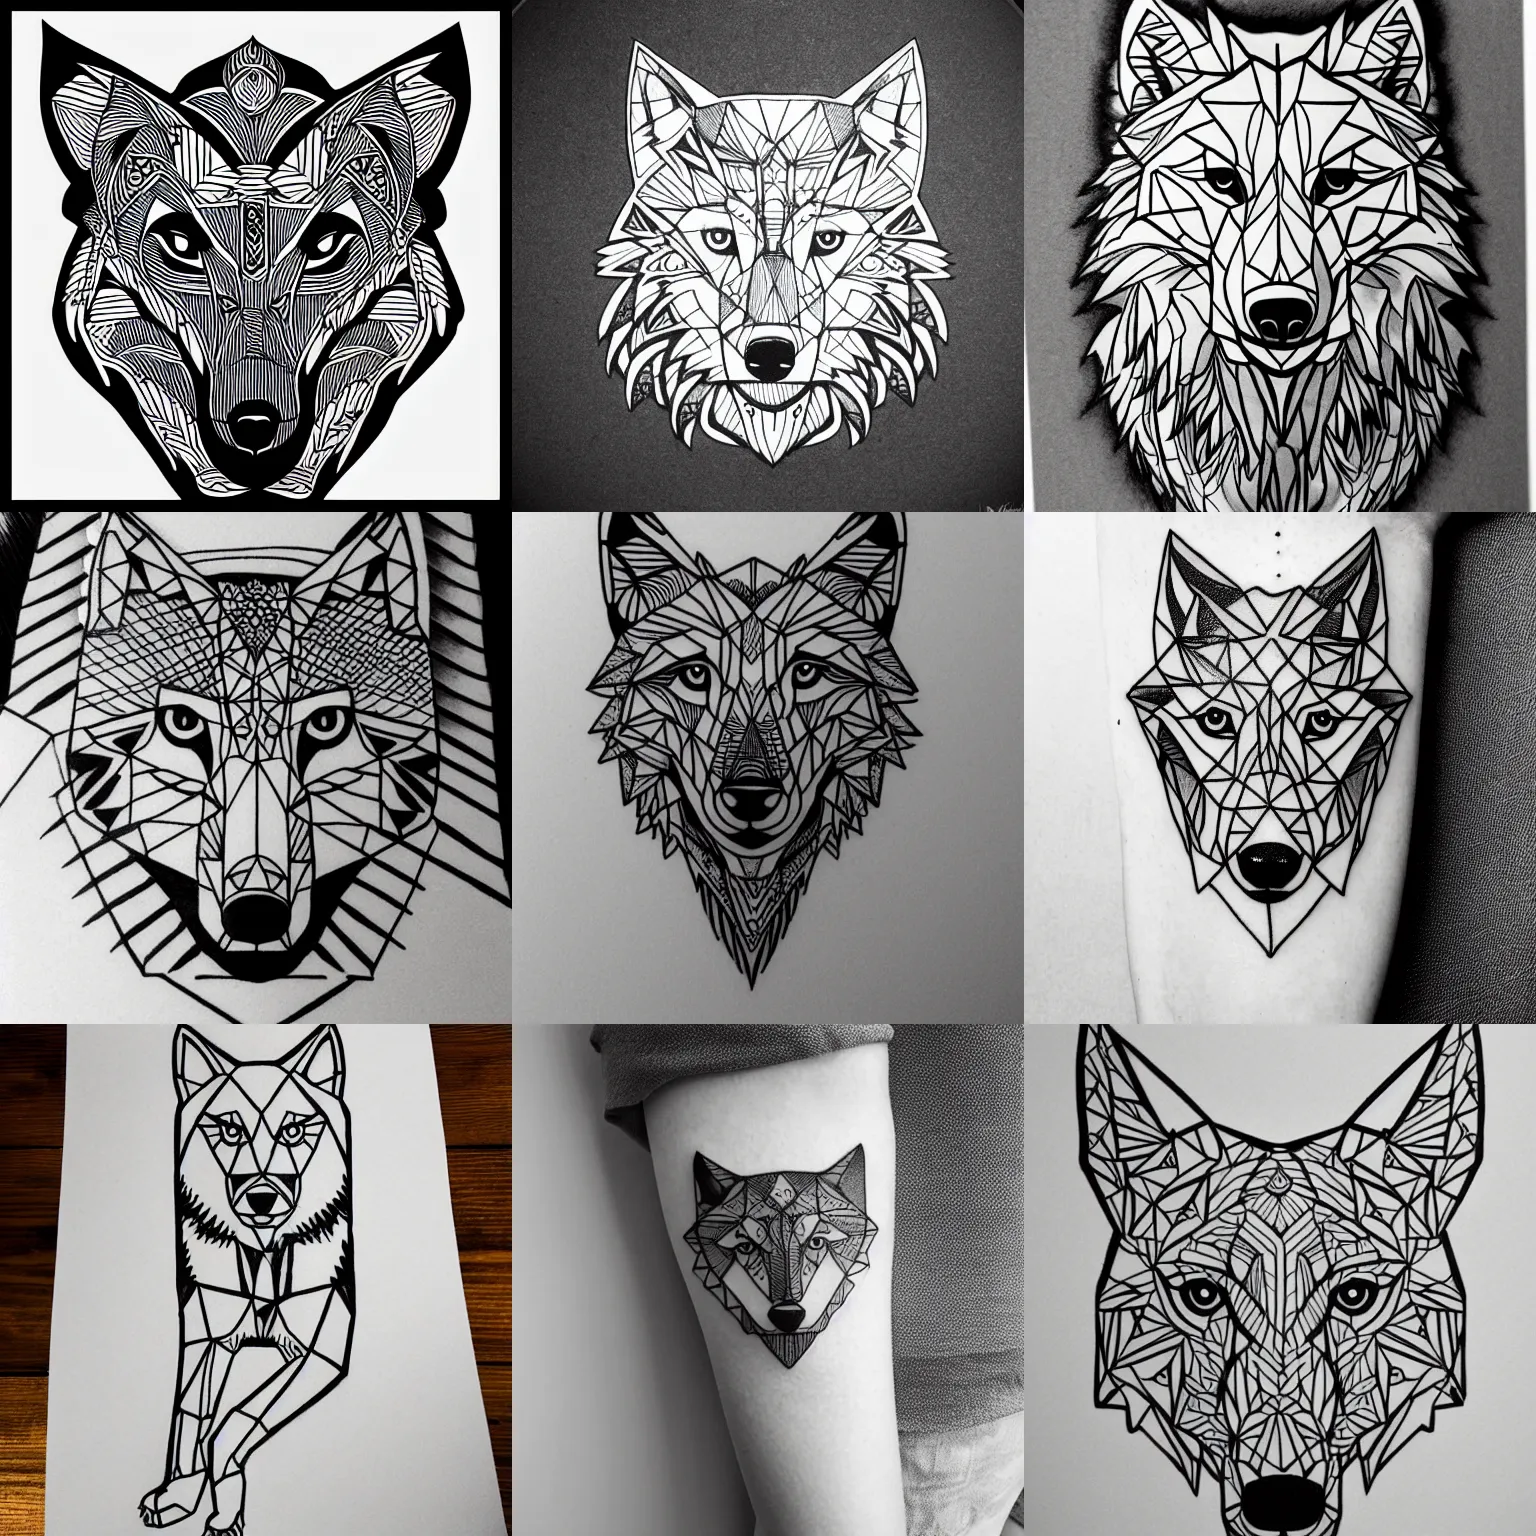 Prompt: wolf cub tattoo geometric line art